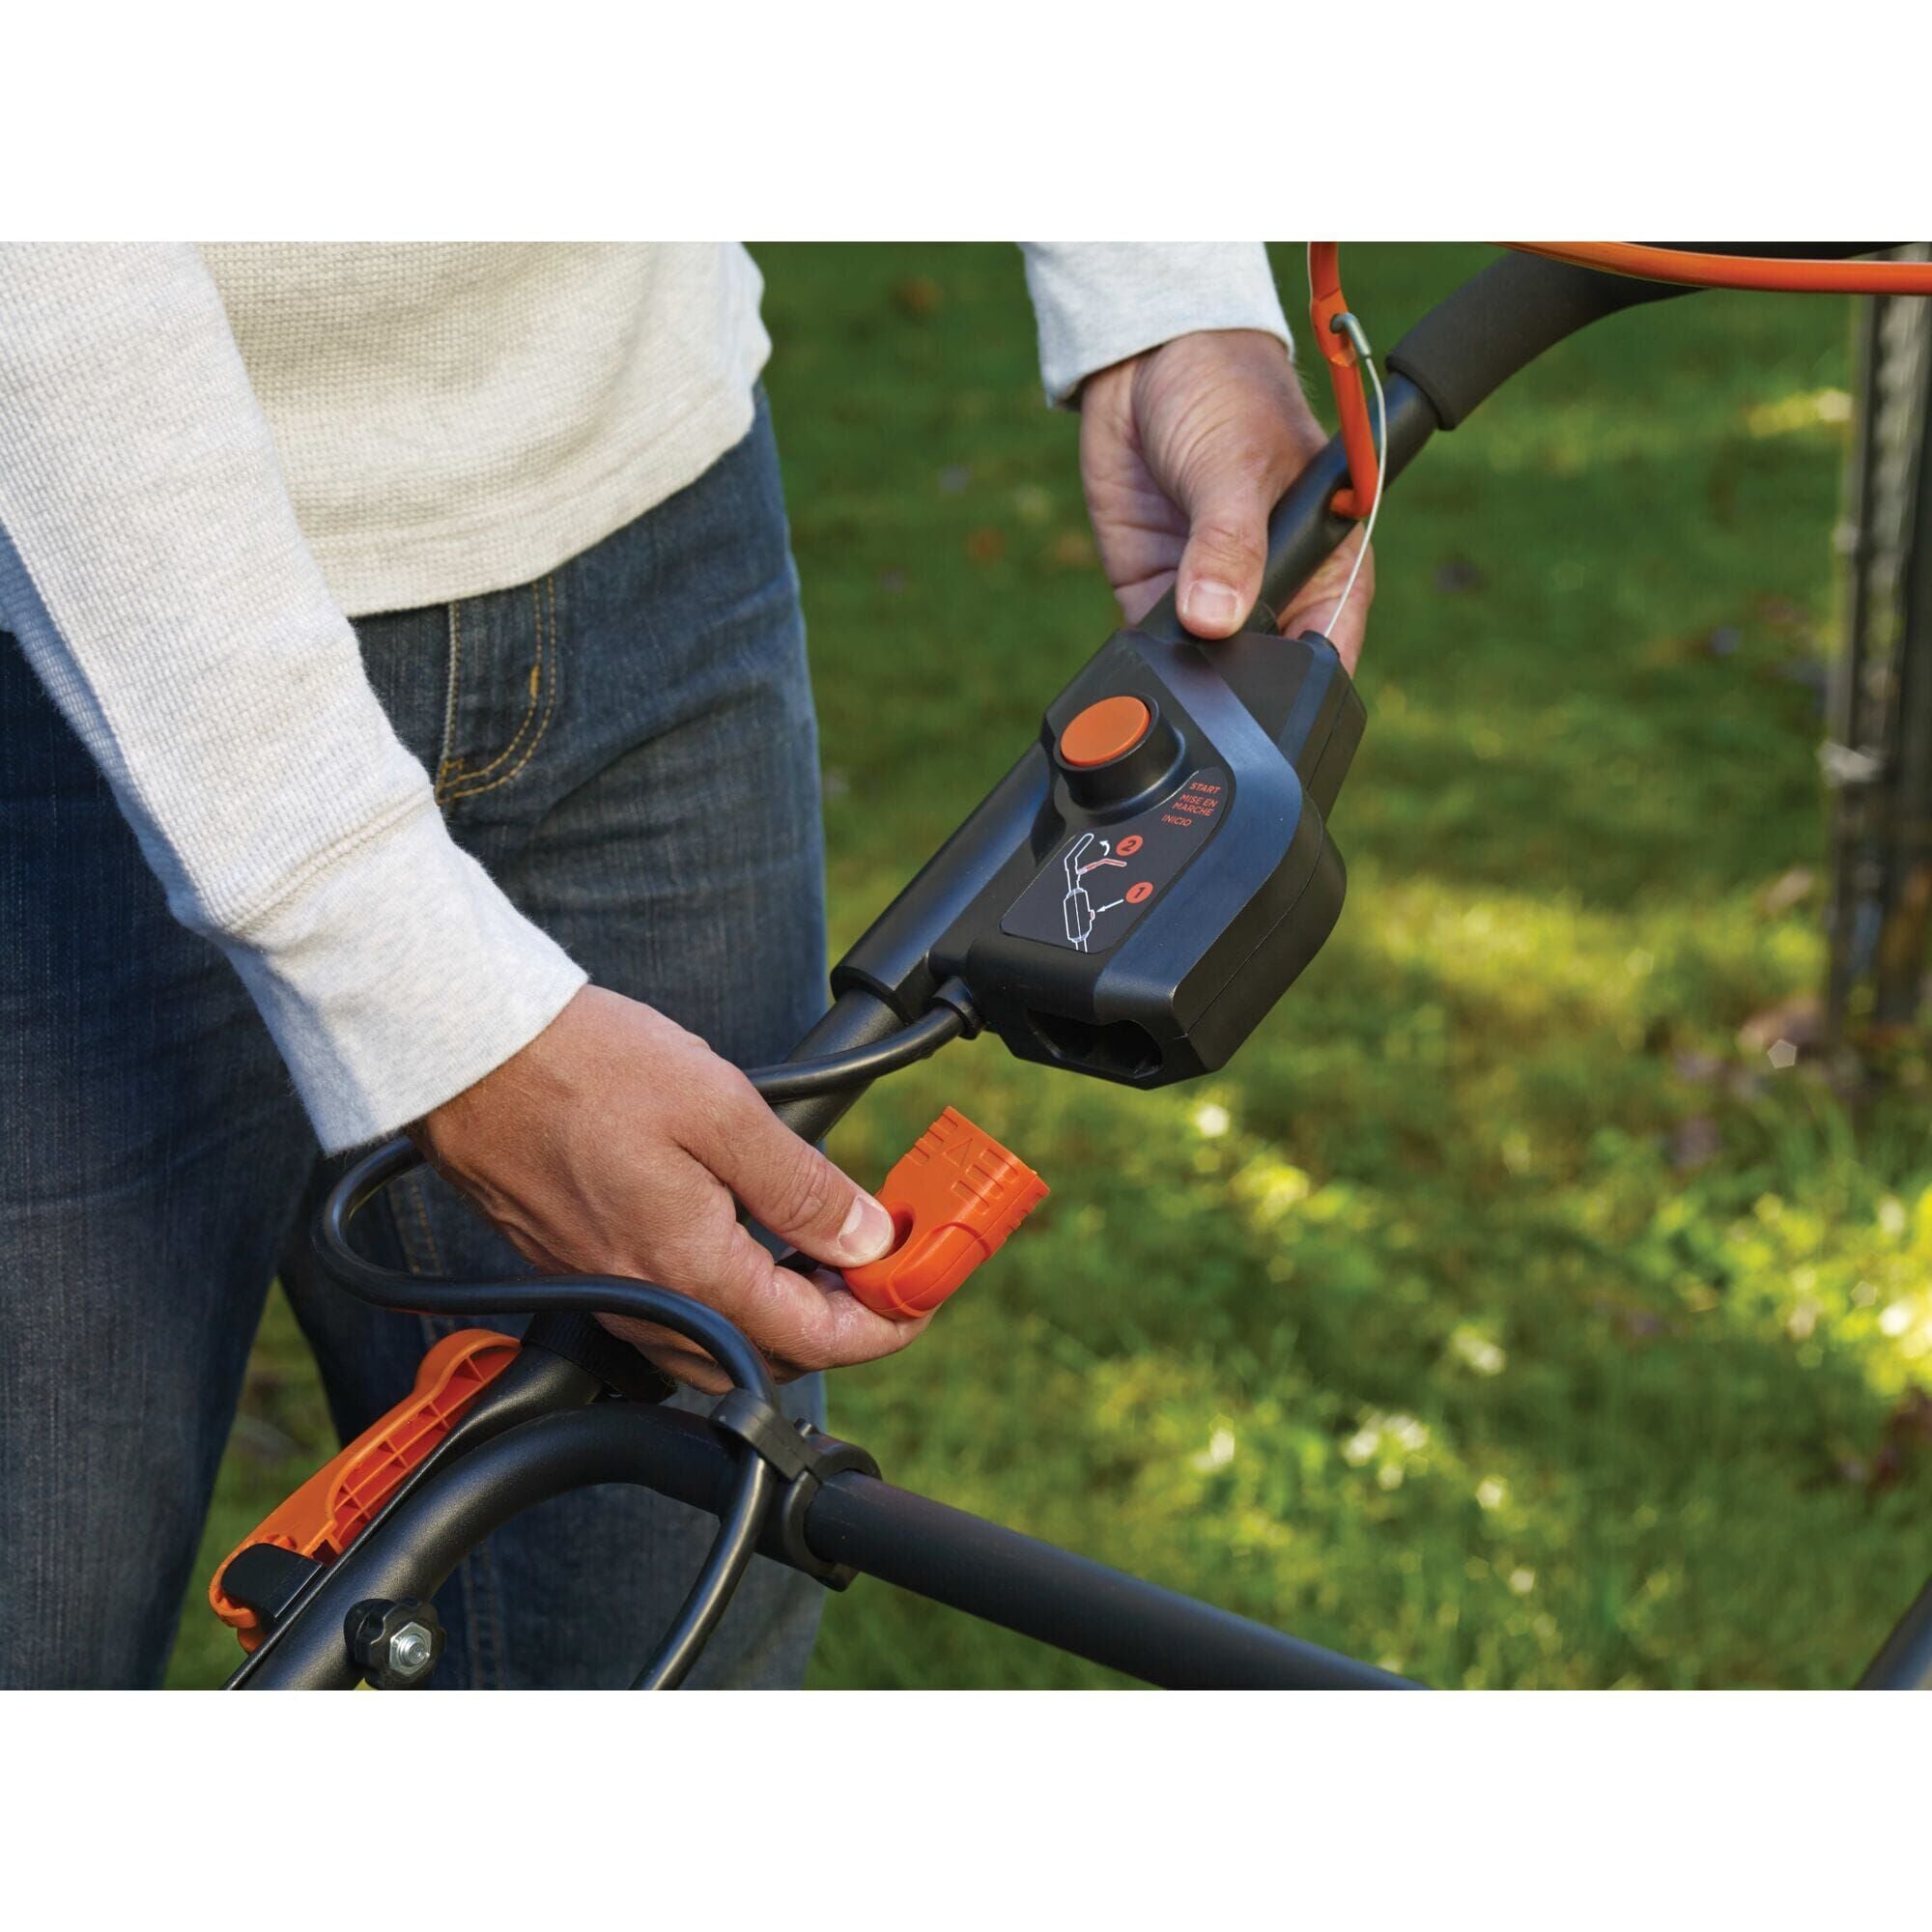 Black & Decker CM1836 Cordless Electric Lawn Mower 